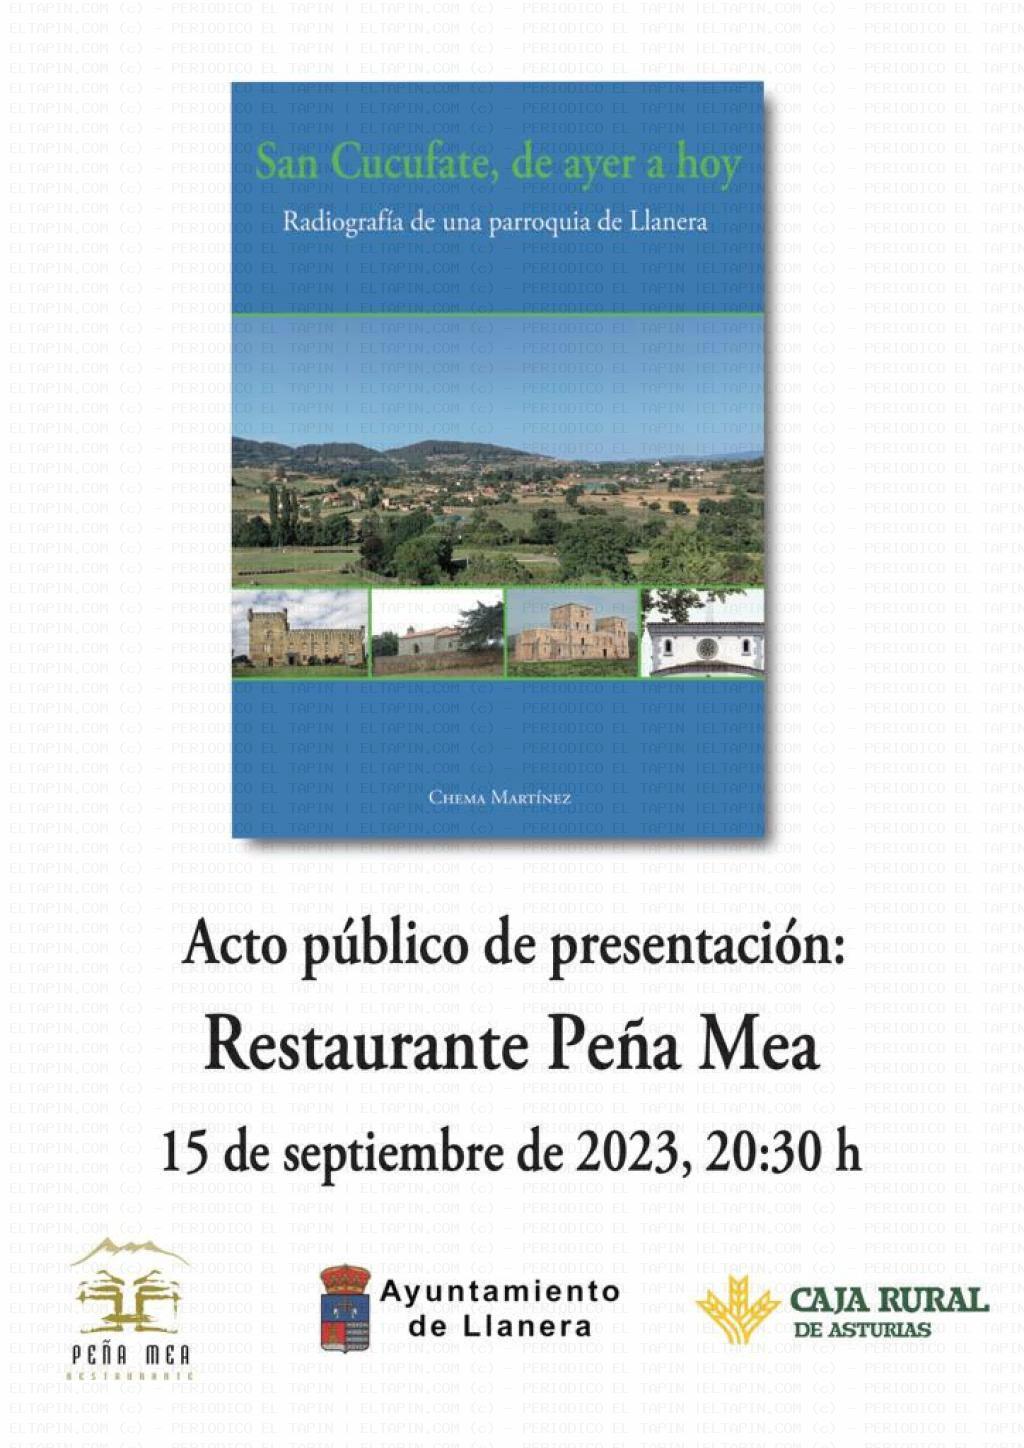 El Tapin - Chema Martínez presenta su libro "San Cucufate, de ayer a hoy" el 15 de septiembre en el Restaurante Peña Mea